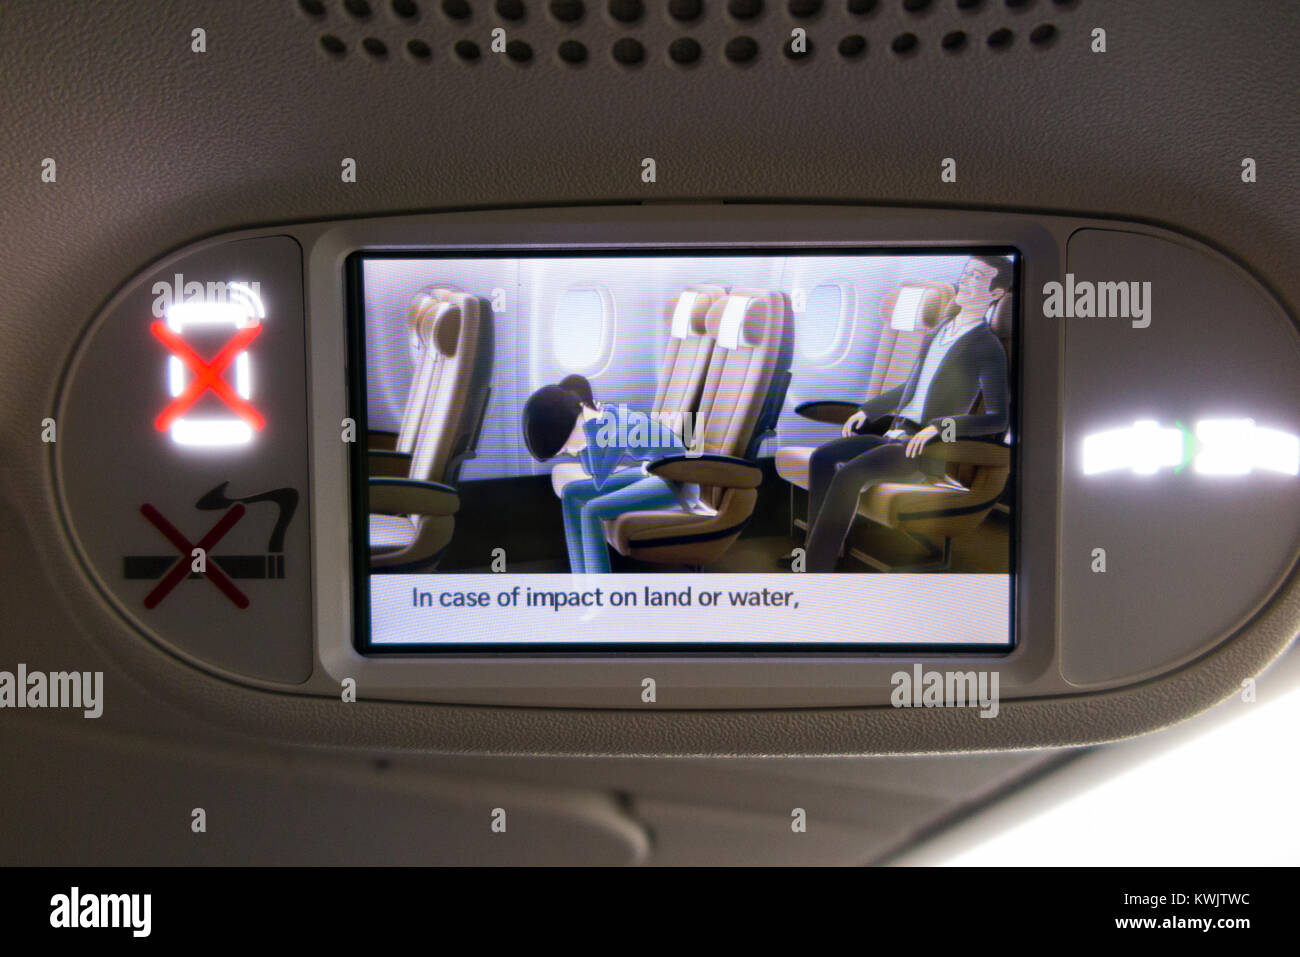 Aufgezeichnete Screening von Flugzeug Flugzeug Flugzeug Flugzeug Flug Monitor Bildschirm mit pre Flight Passenger safety Anweisungen für den Notfall in der Ebene Stockfoto